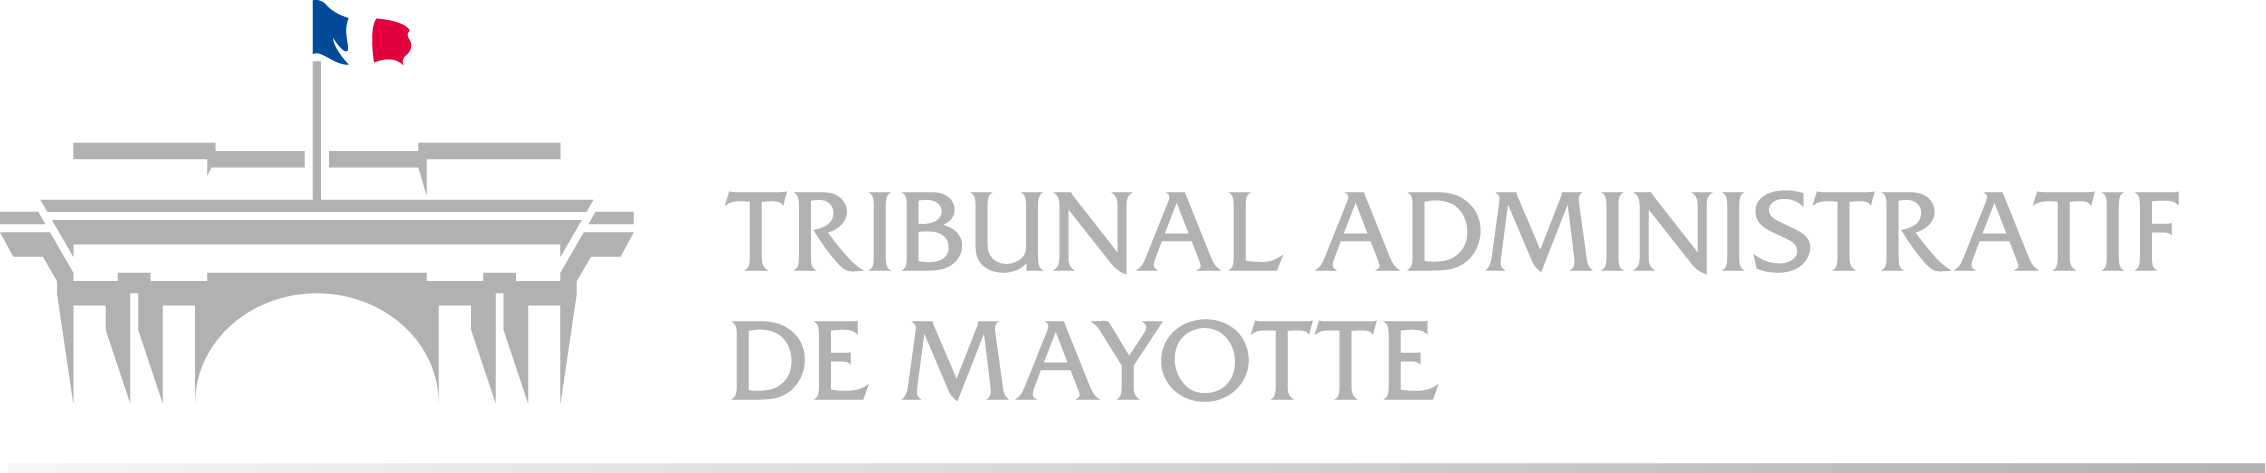 Tribunal administratif de Mayotte - Retour à l'accueil